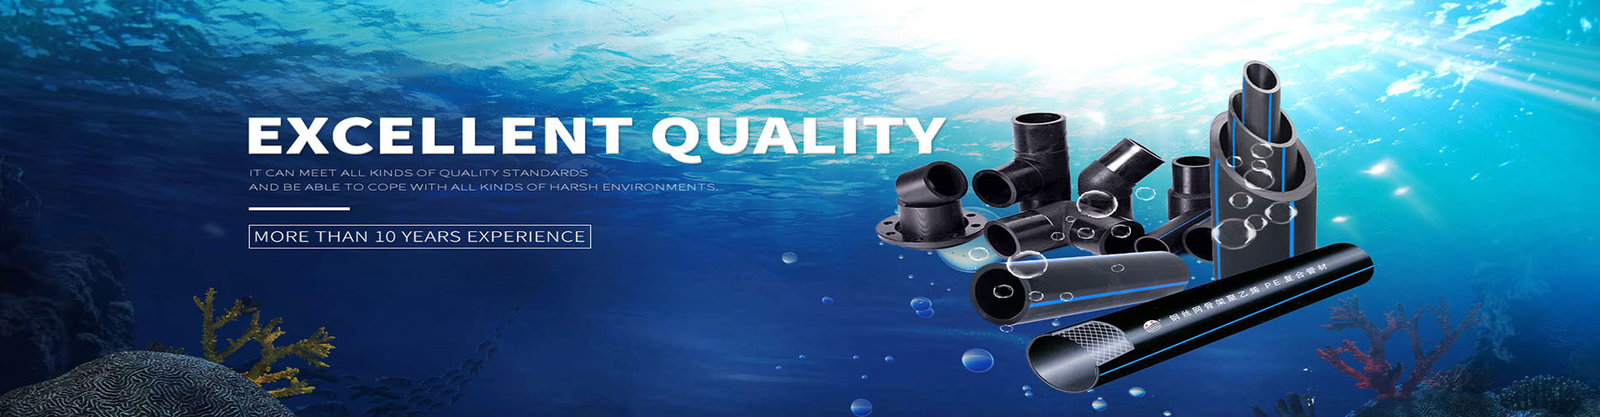 Qualität HDPE Wasserversorgungs-Rohre Fabrik